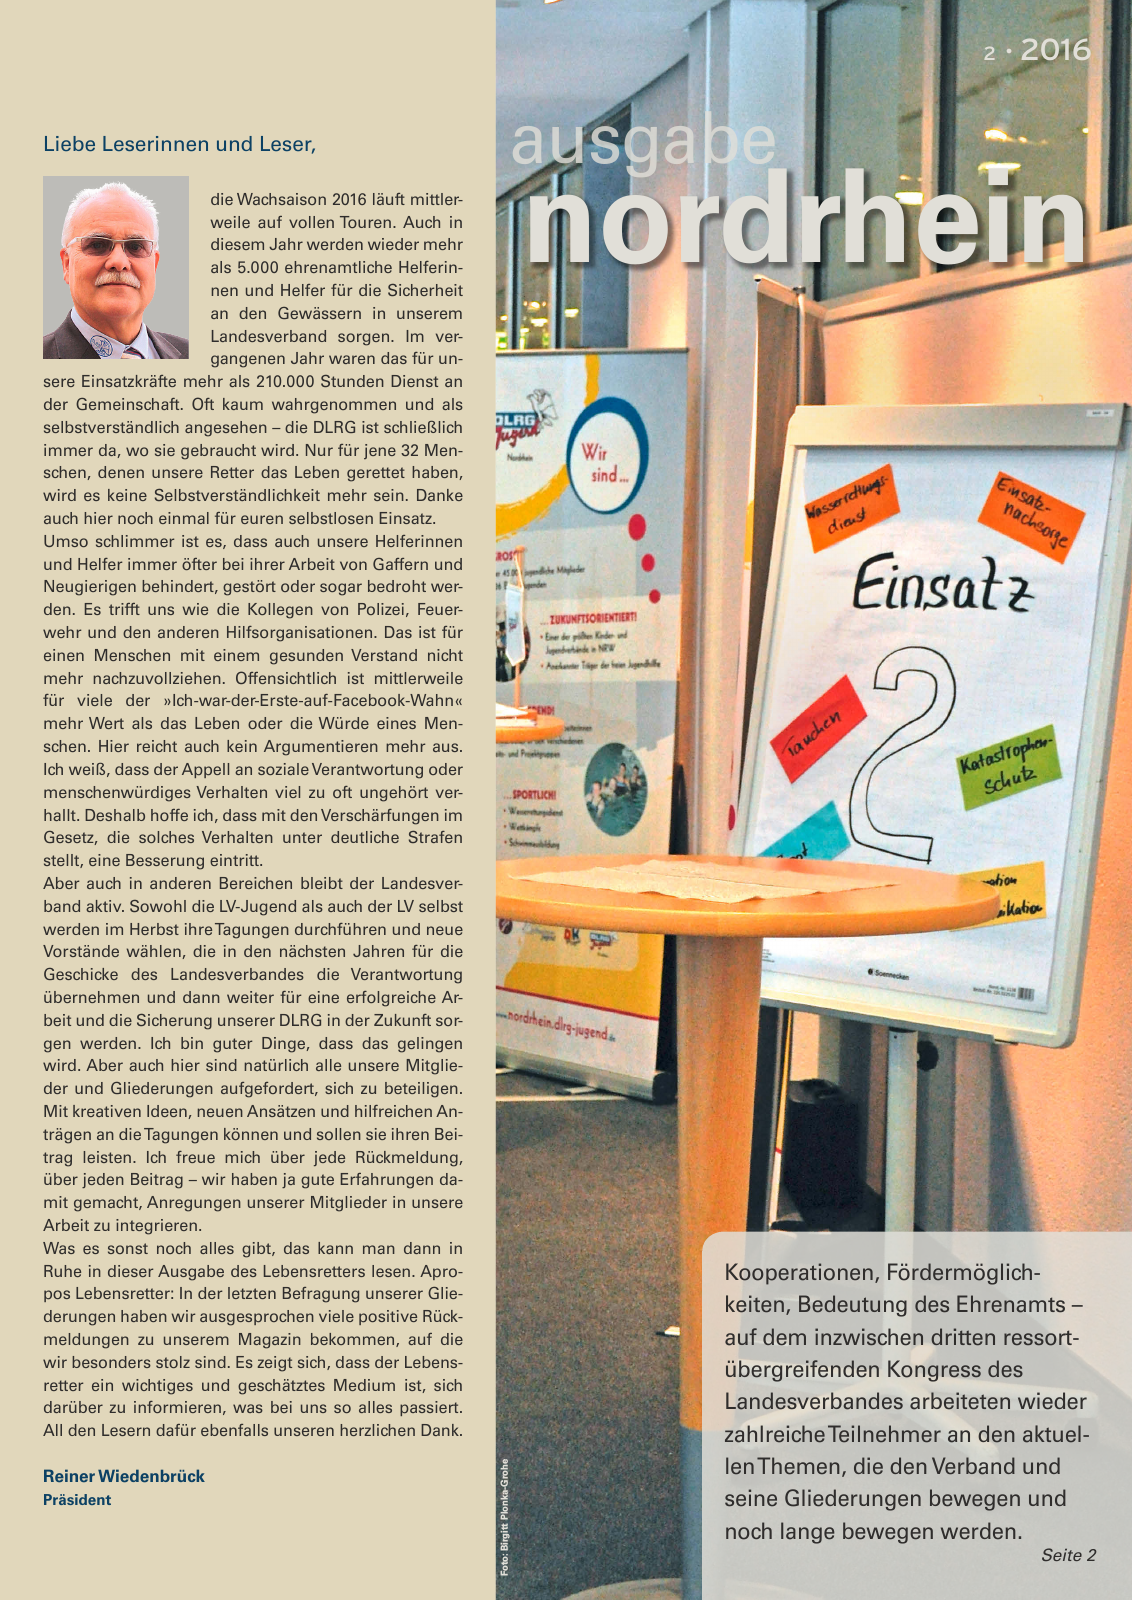 Vorschau Lebensretter 2/2016 - Regionalausgabe Nordrhein Seite 3